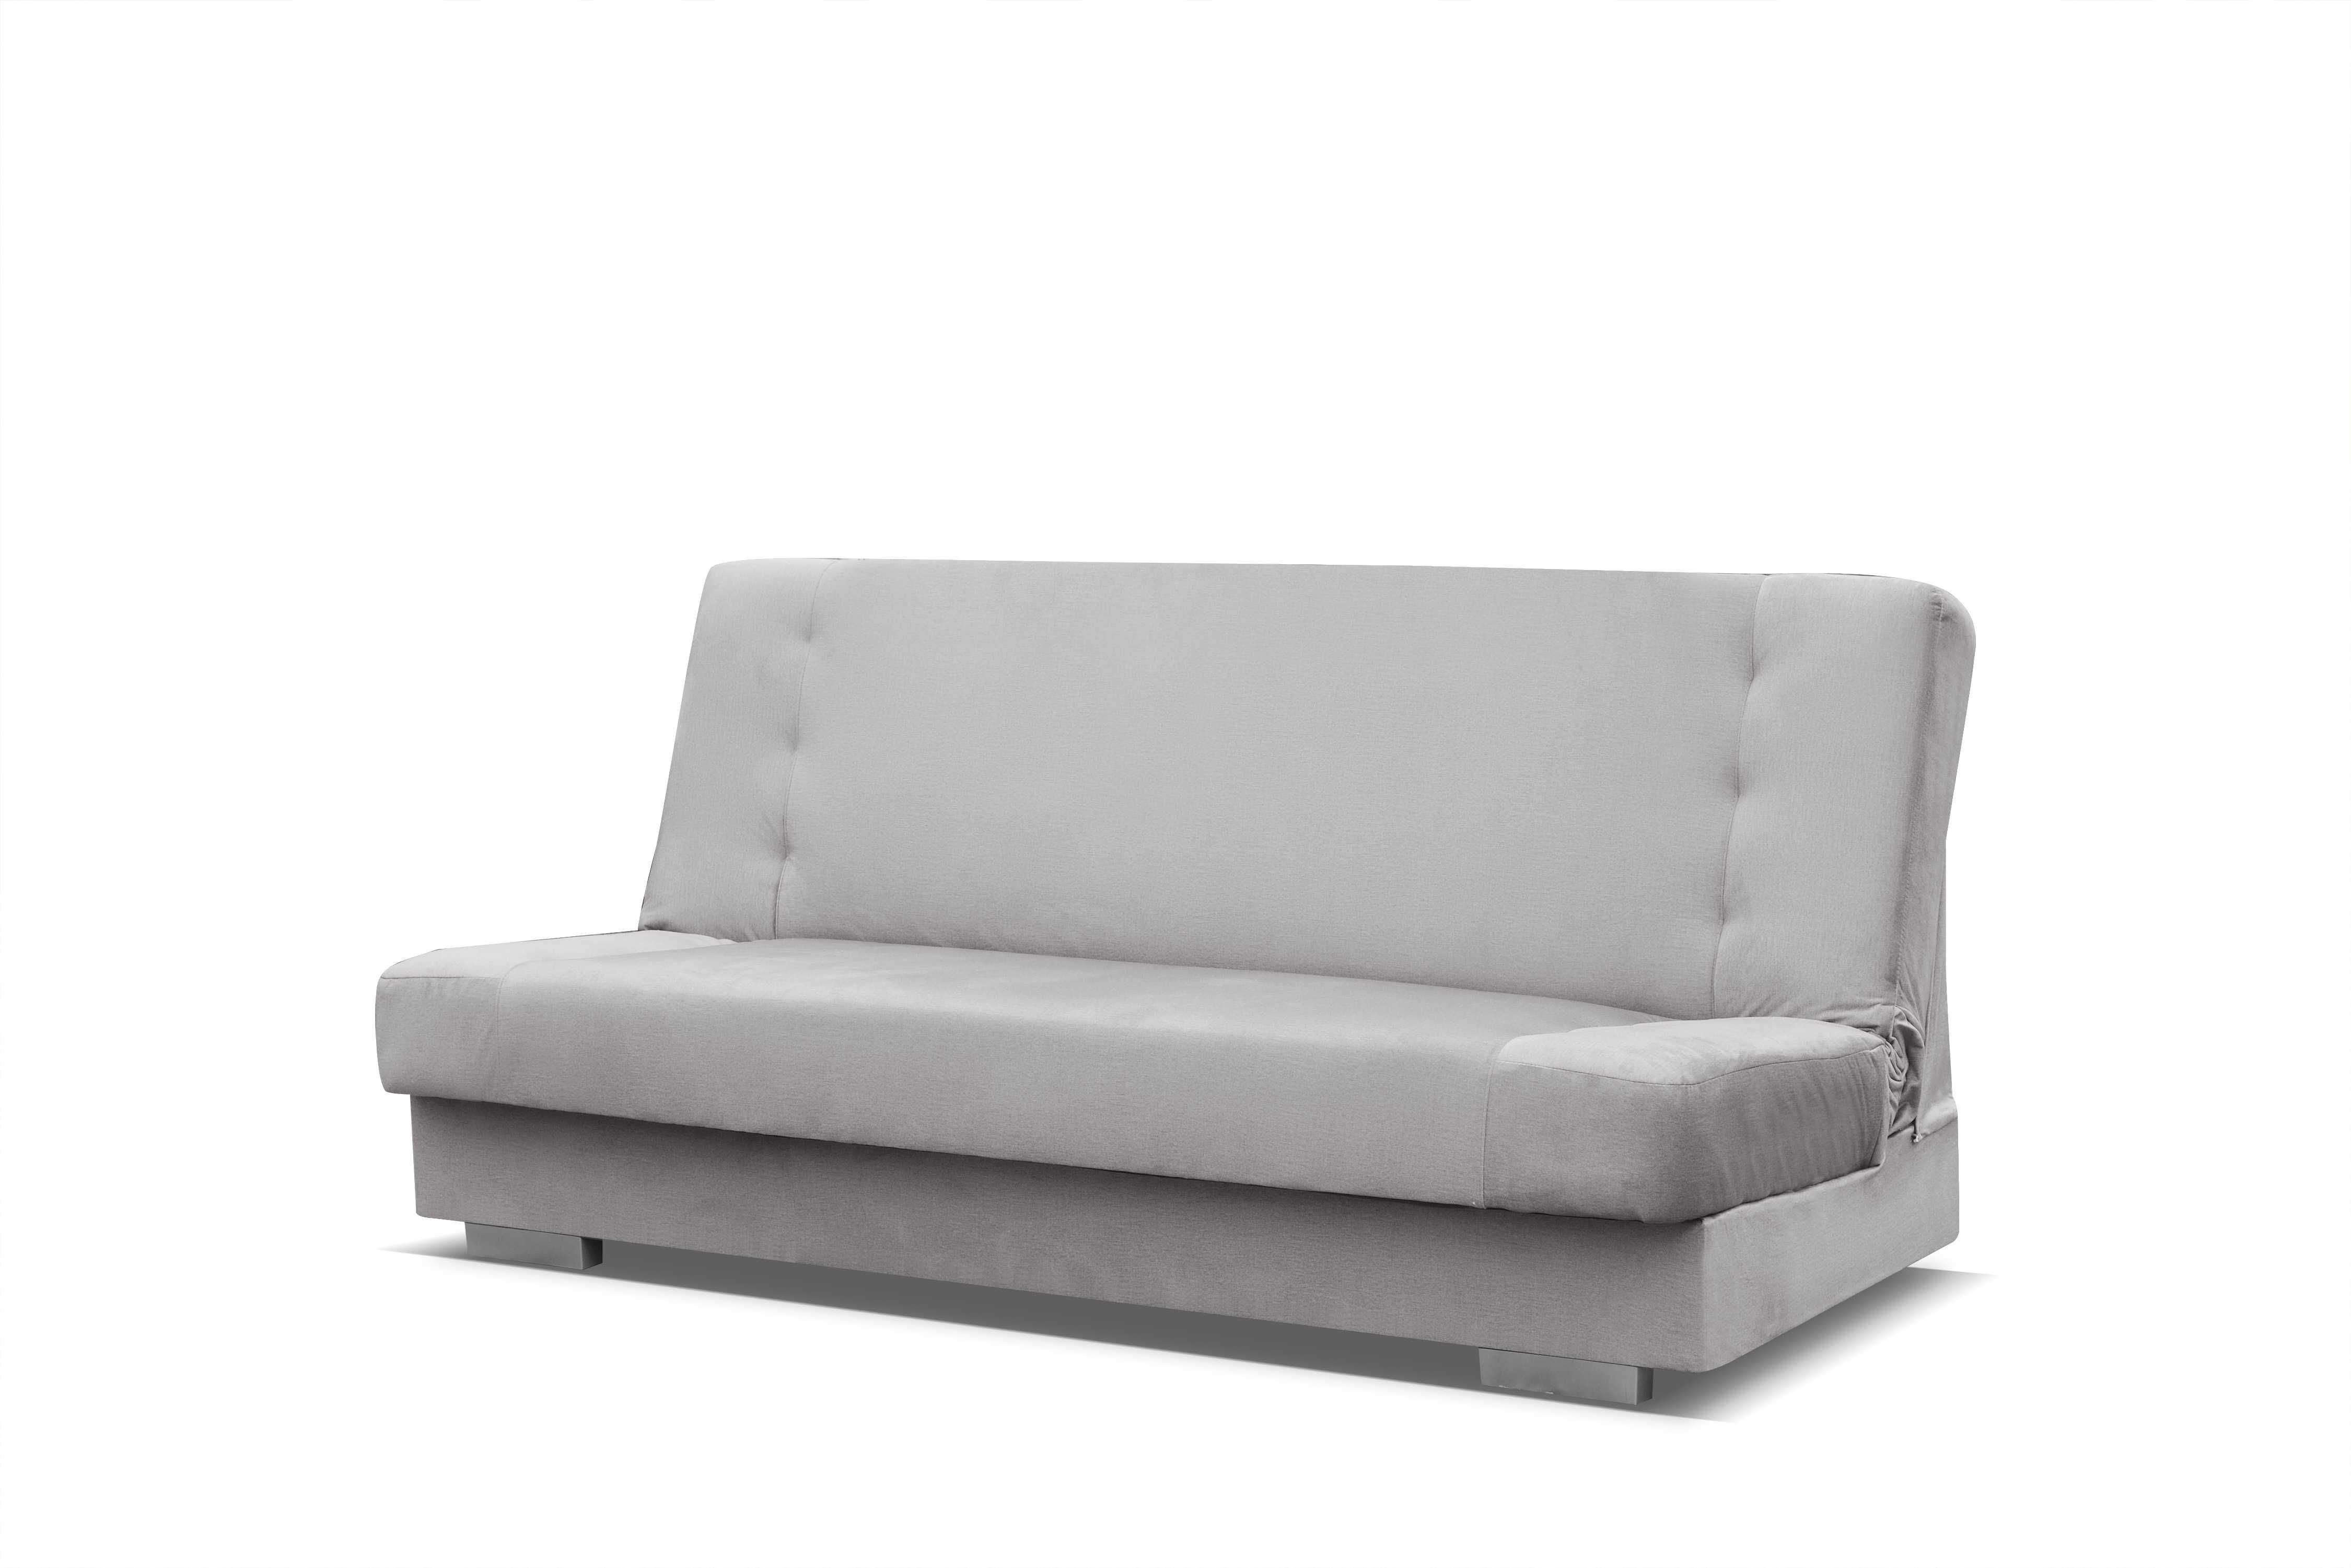 Wersalk sofa kanapa,łóżko leżanka rozkładana PROMOCJA Producent